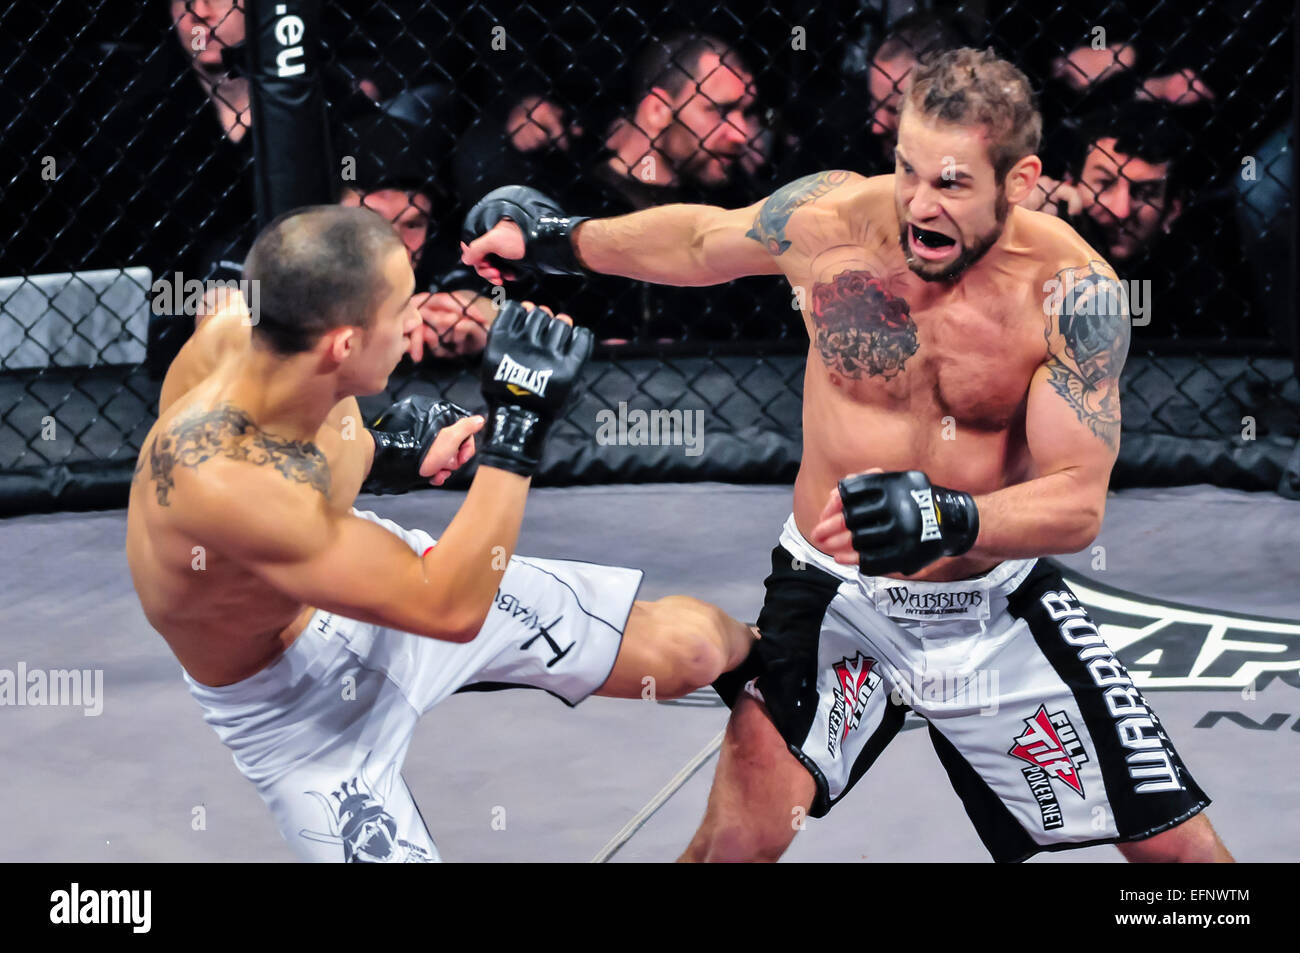 Rich Clementi de New Jersey, en ce moment à Louisiane, une cage de MMA UFC figher et champion de lutte, prend sur un adversaire de l'Irlande du Nord. Banque D'Images